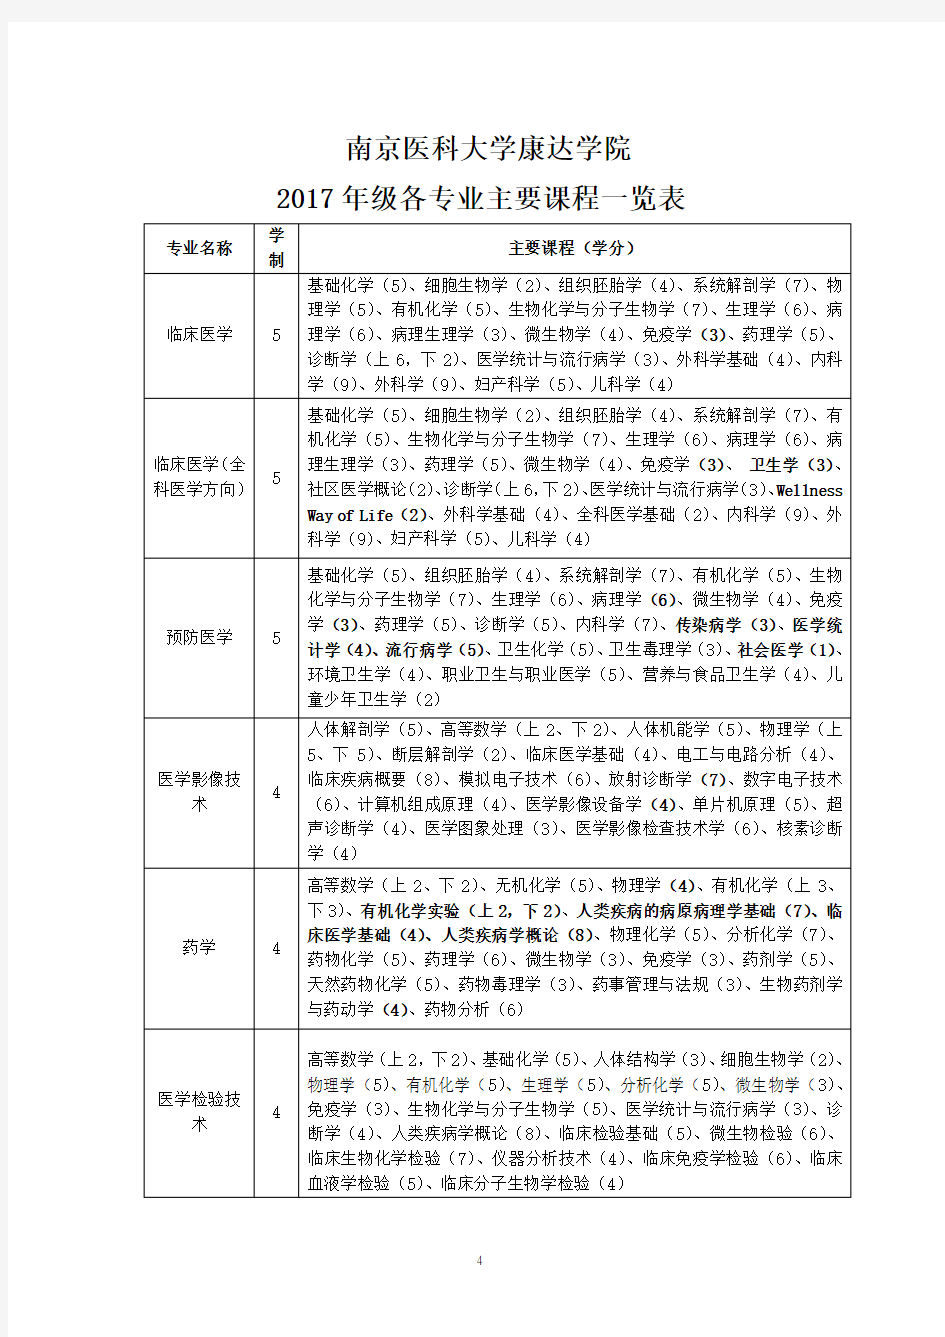 南京医科大学康达学院 2017年级各专业主要课程一览表